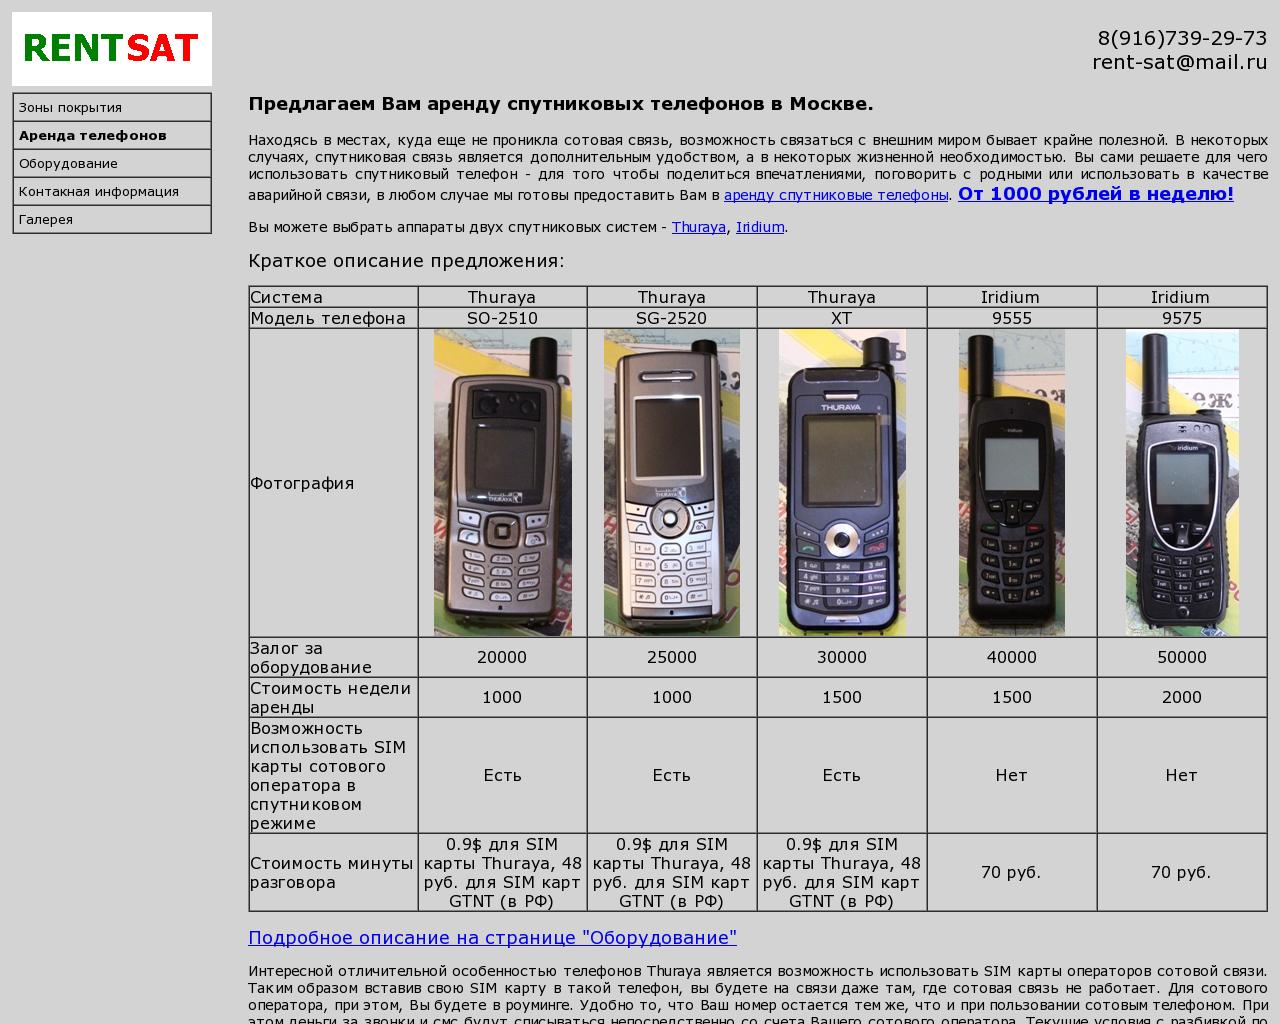 Изображение сайта rentsat.ru в разрешении 1280x1024